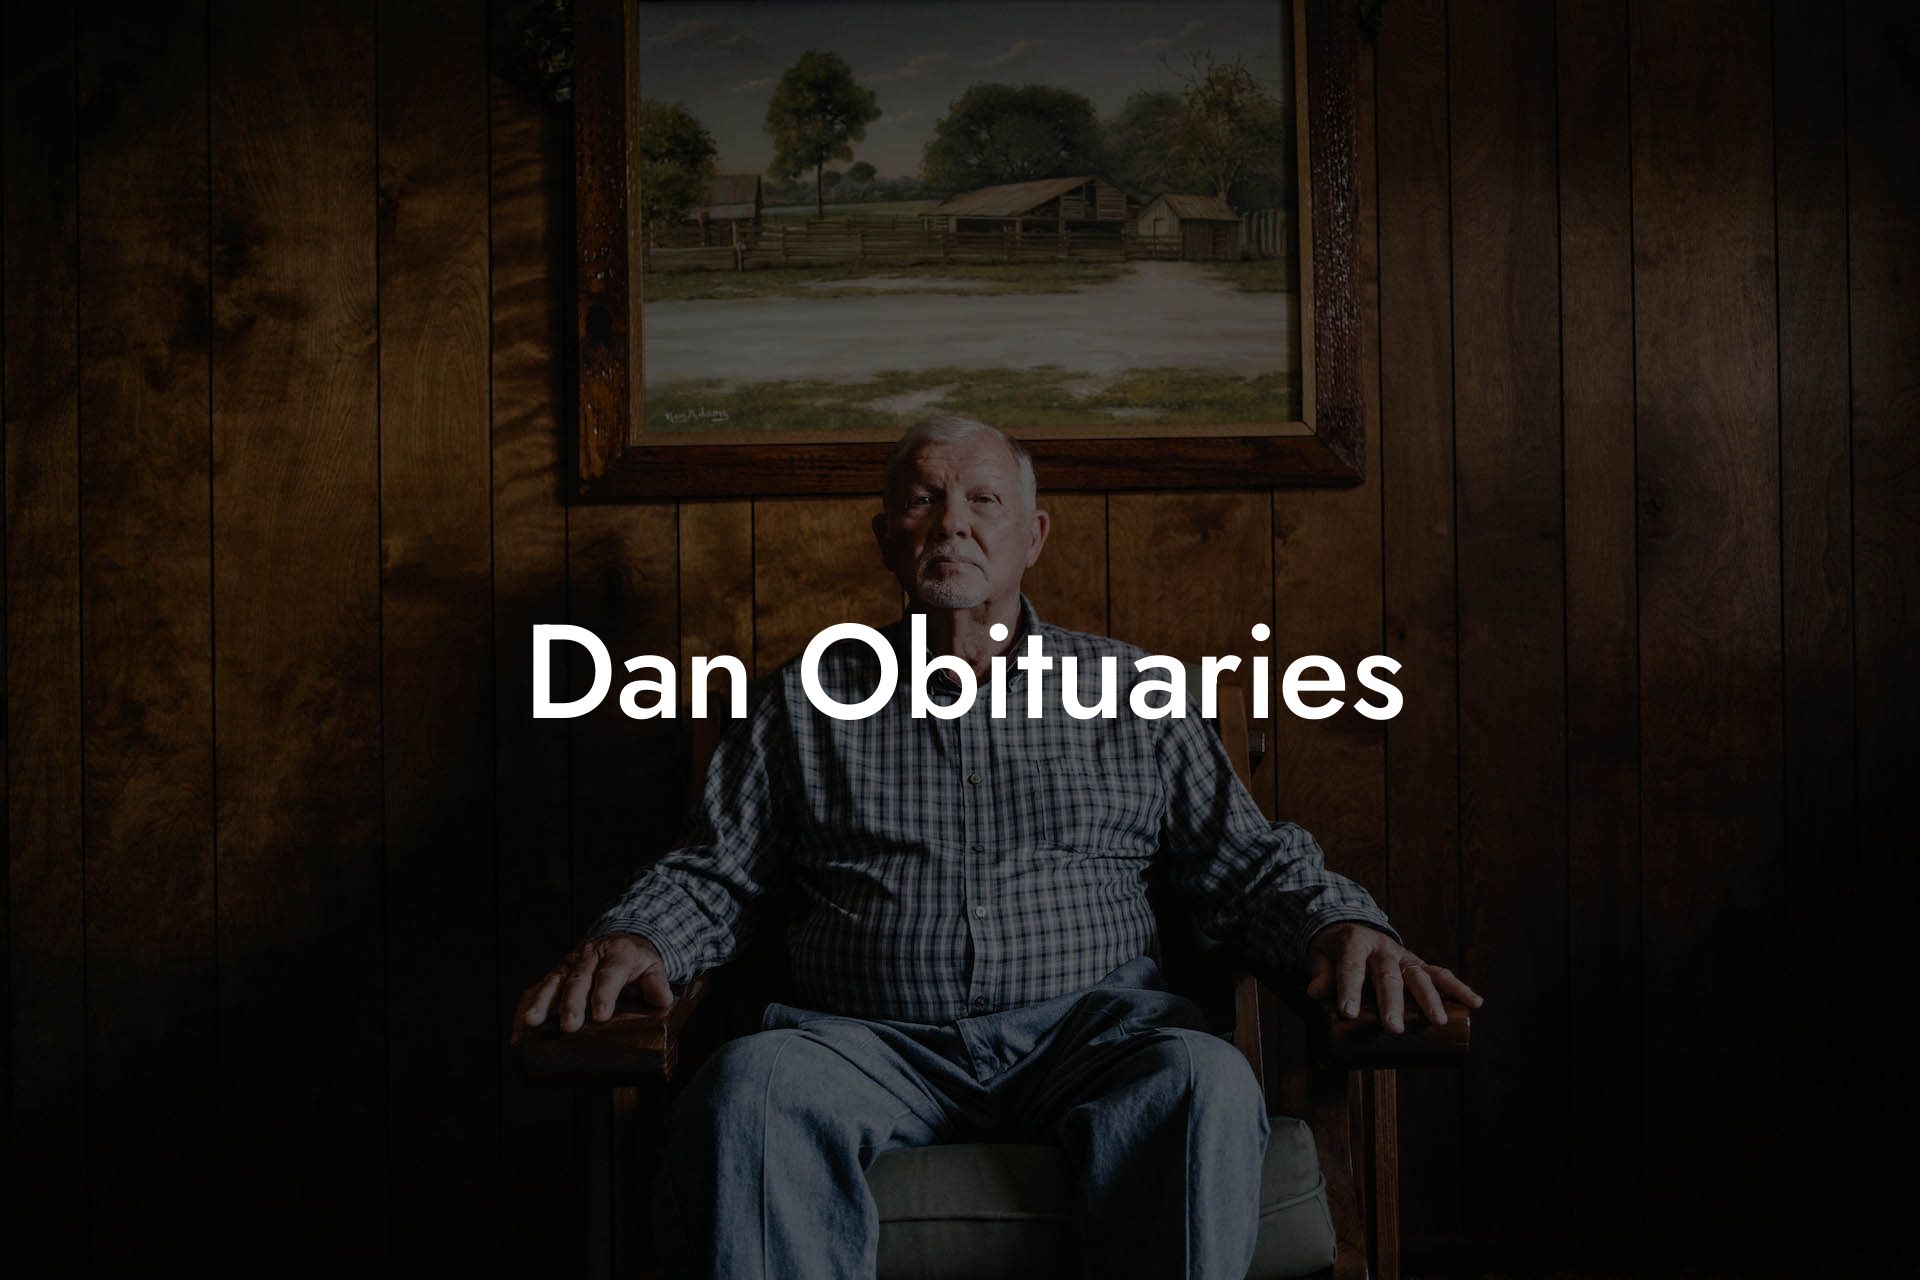 Dan Obituaries